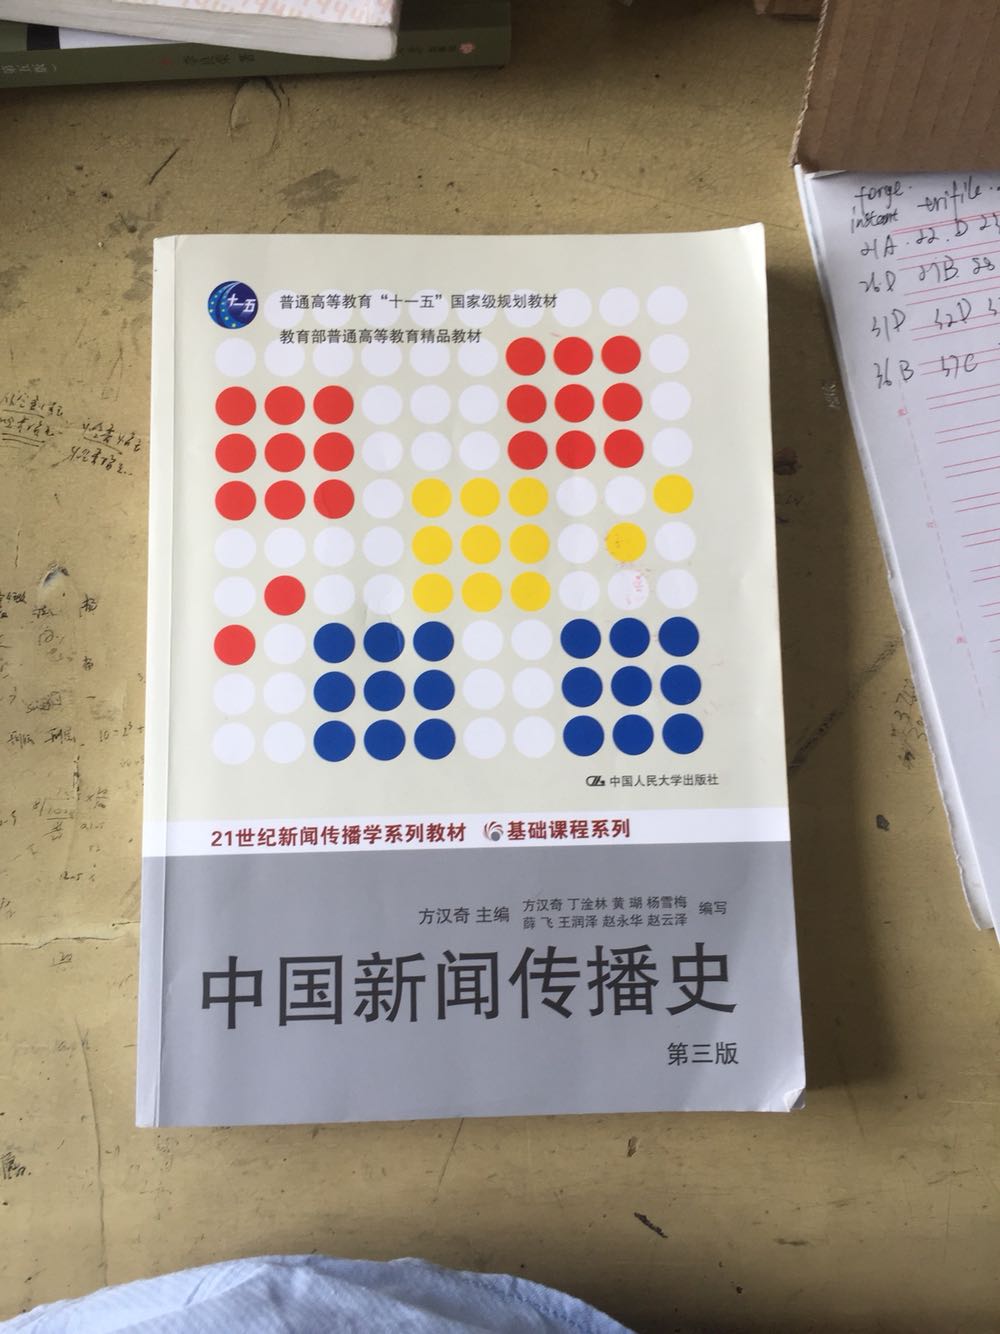 很好的一本书，权威，经典，严谨。对于了解中国新闻史来说，是一本脉络清晰的书。